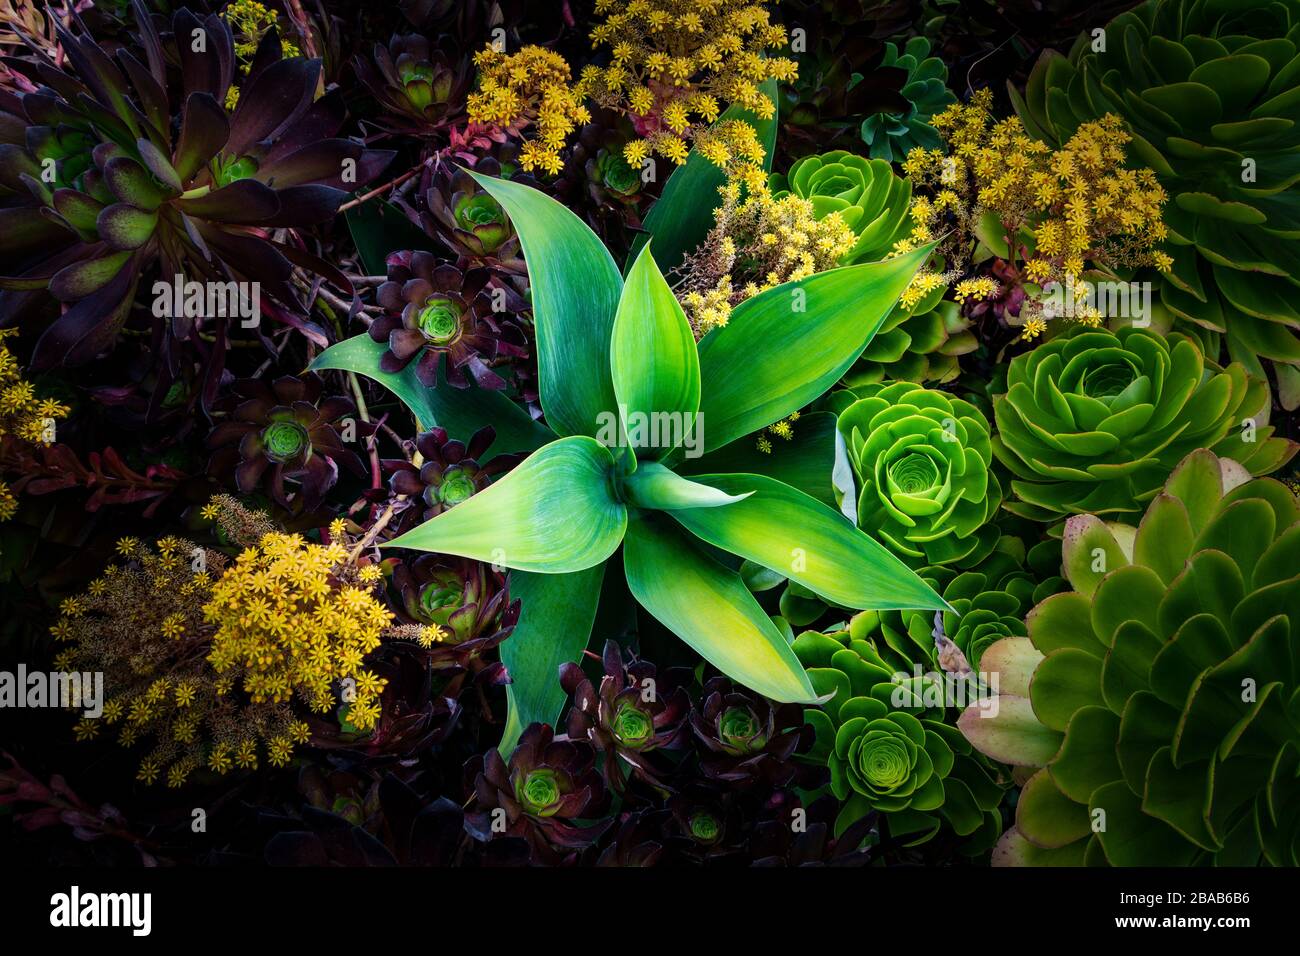 Various succulent plants in garden, Oakland, California, USA Stock Photo